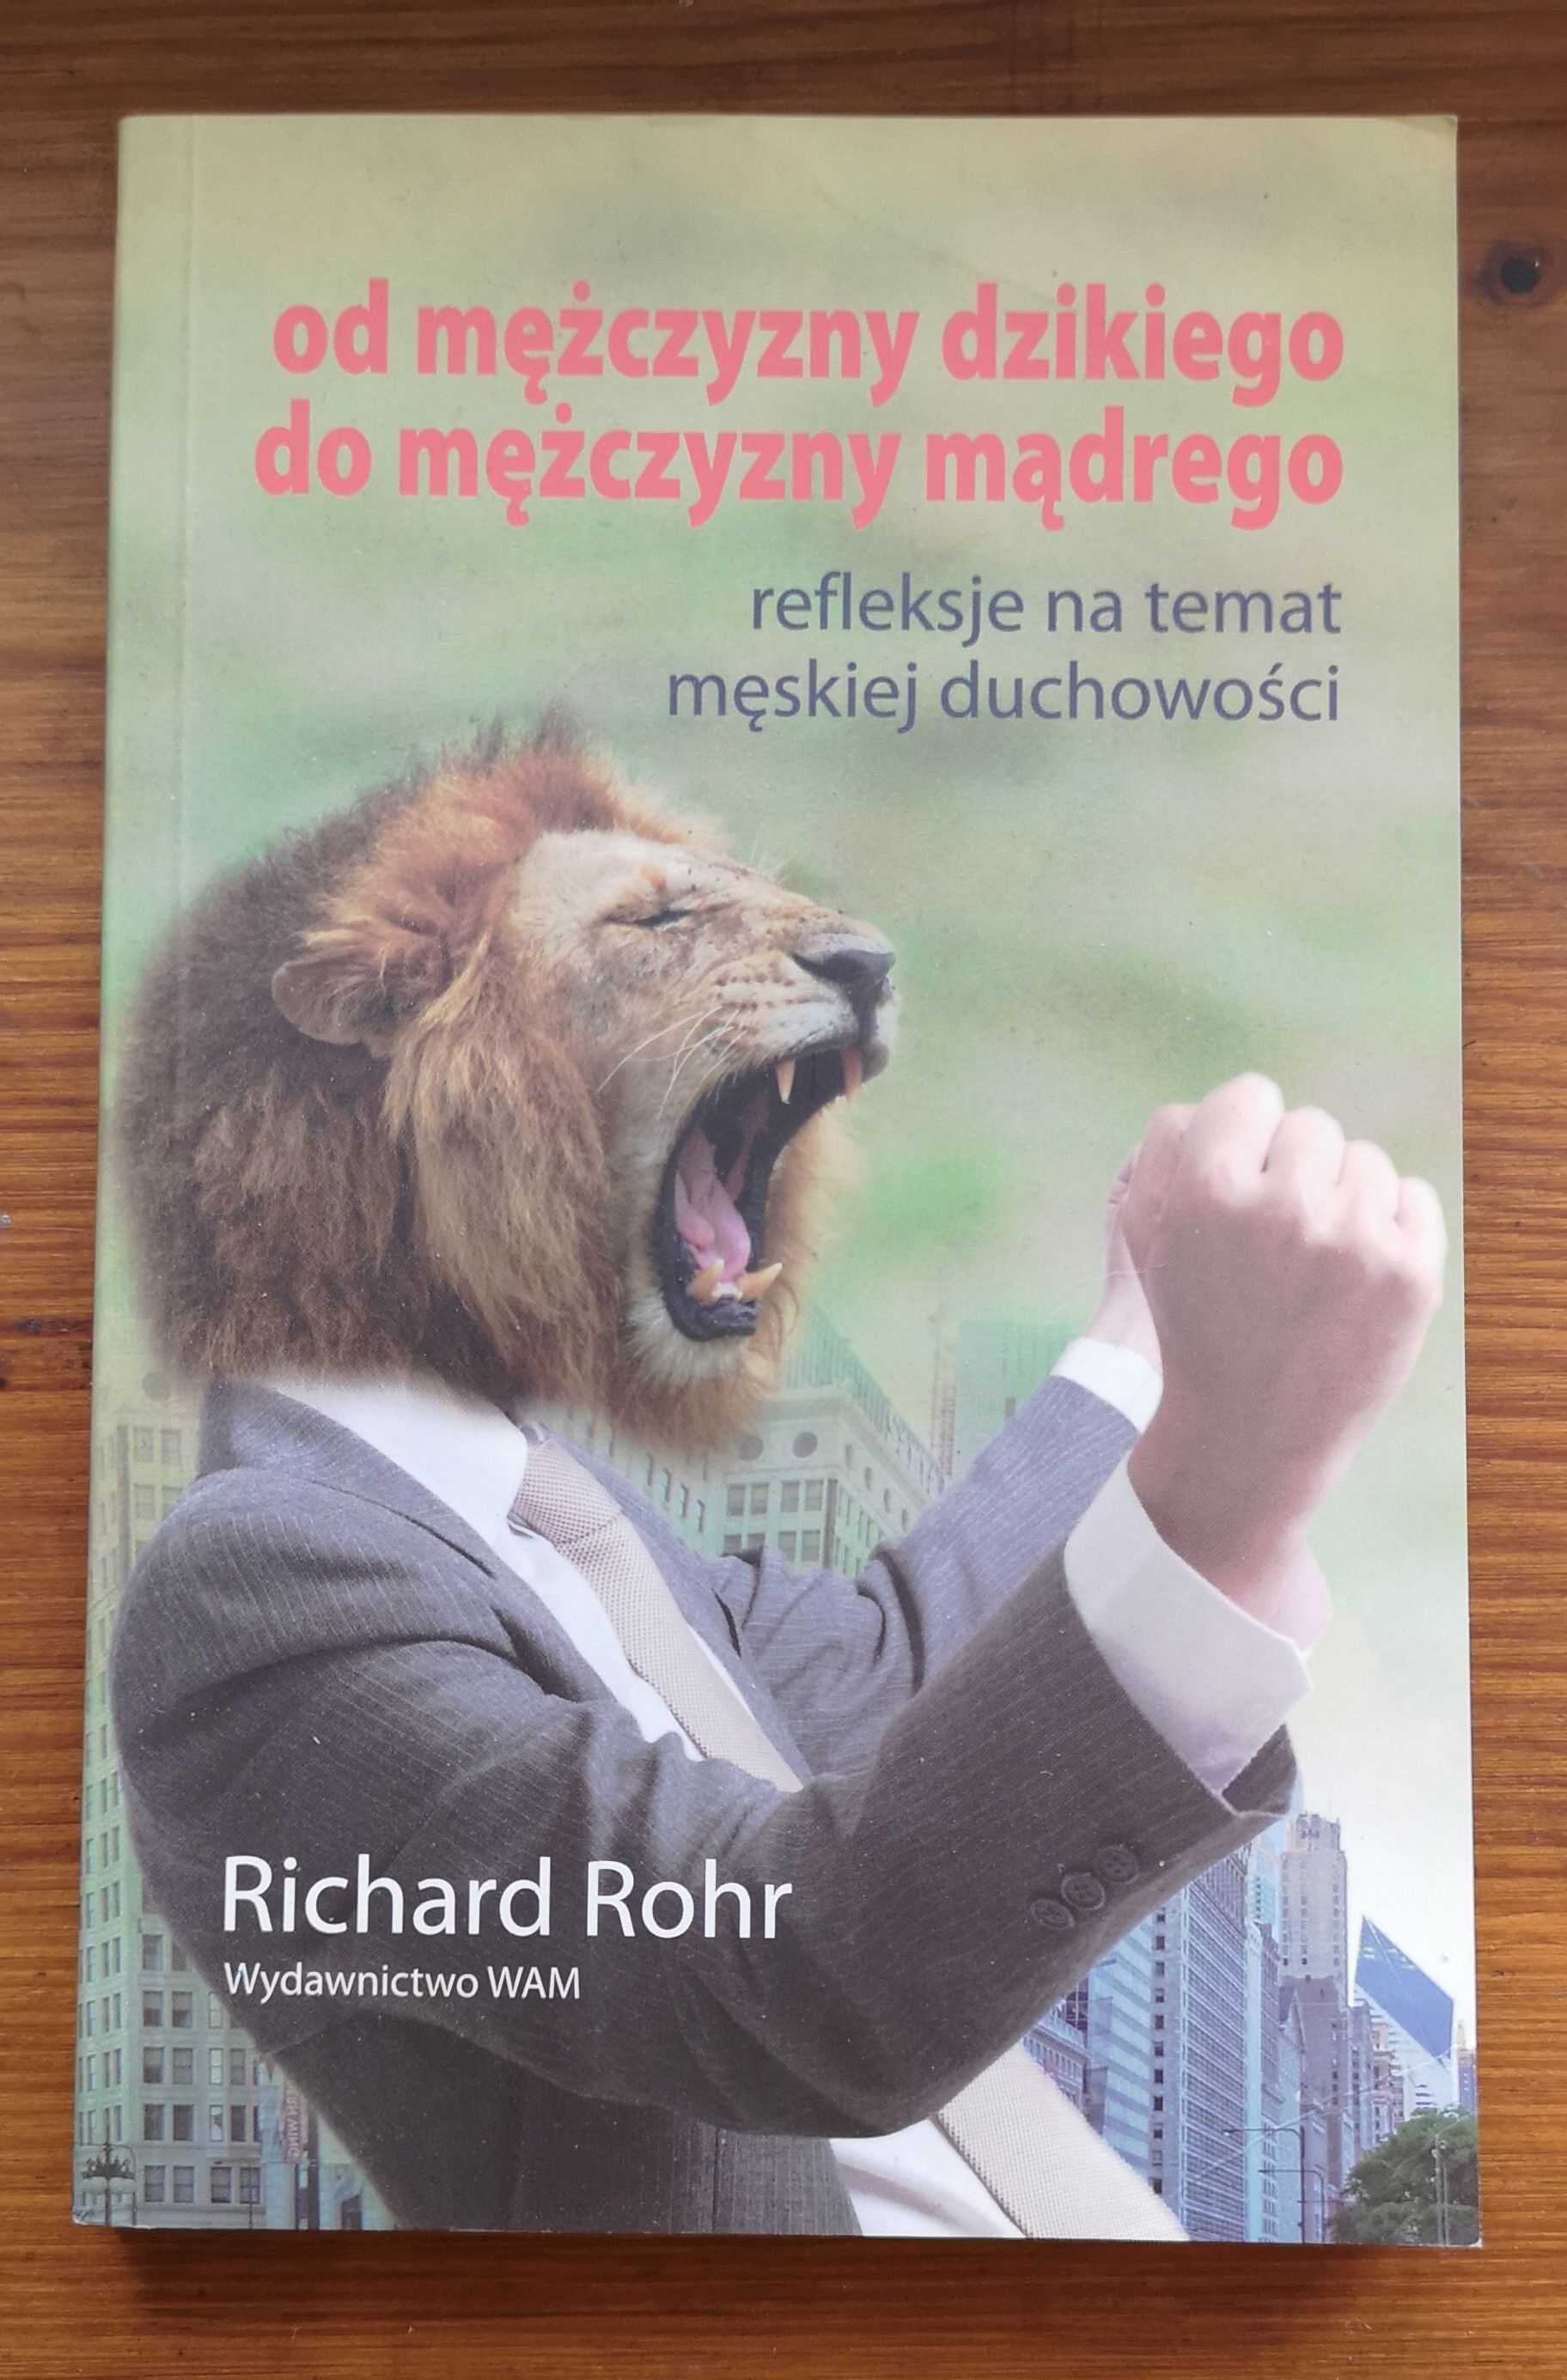 Od mężczyzny dzikiego, do mężczyzny mądrego. Richard Rohr